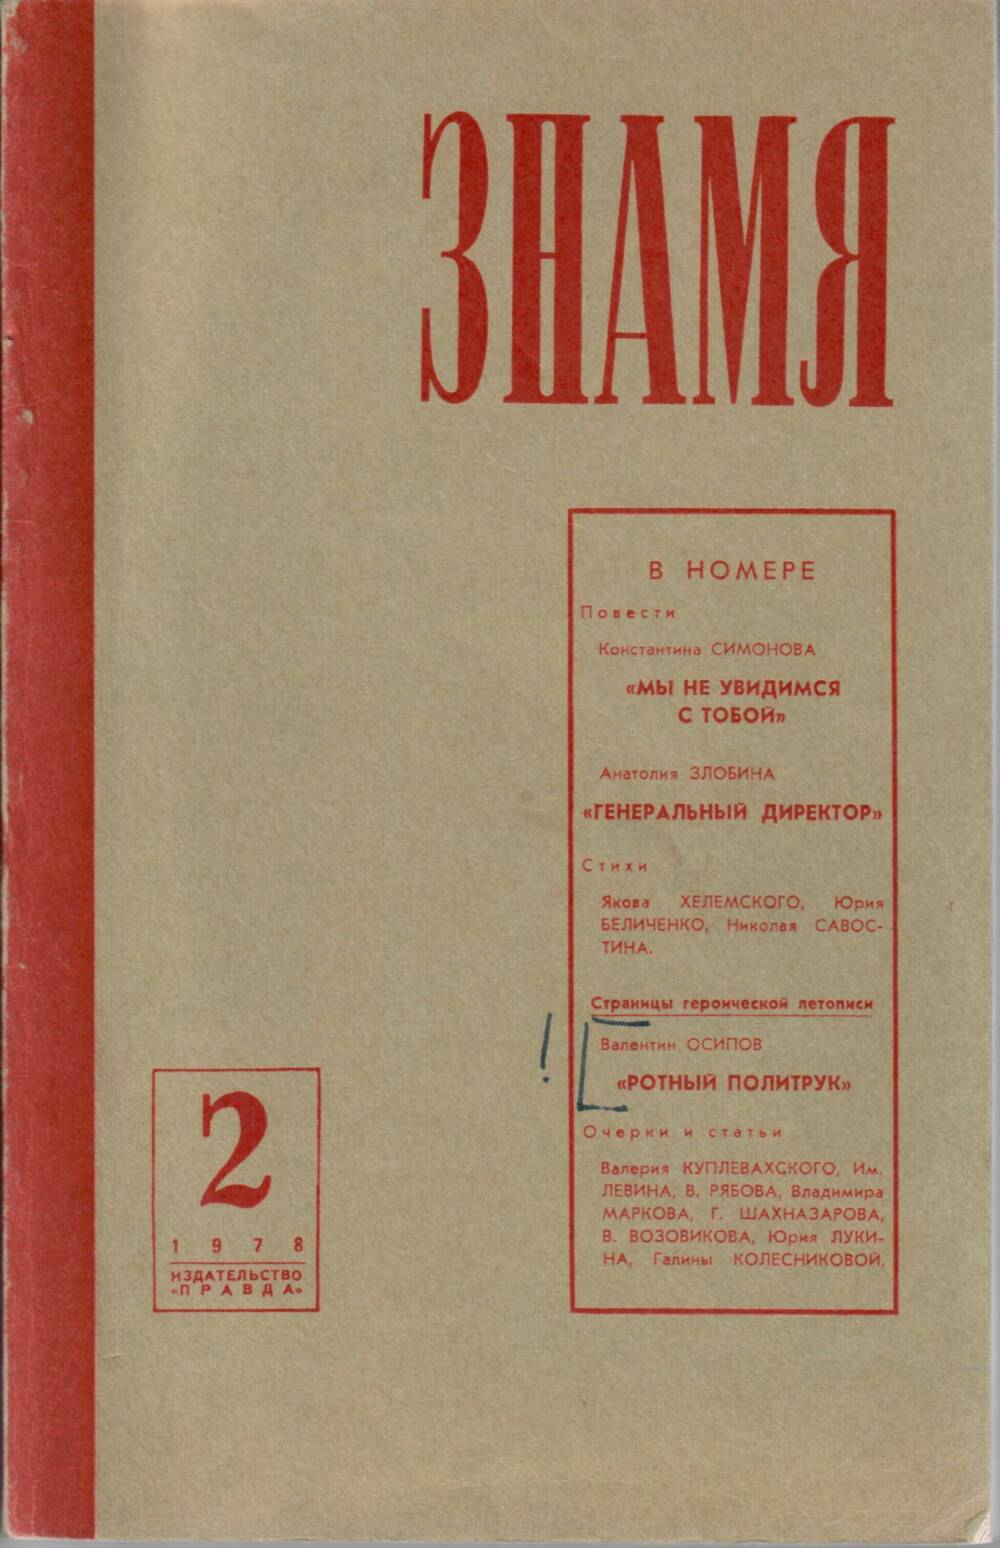 Журнал Знамя, № 2, 1978 г.